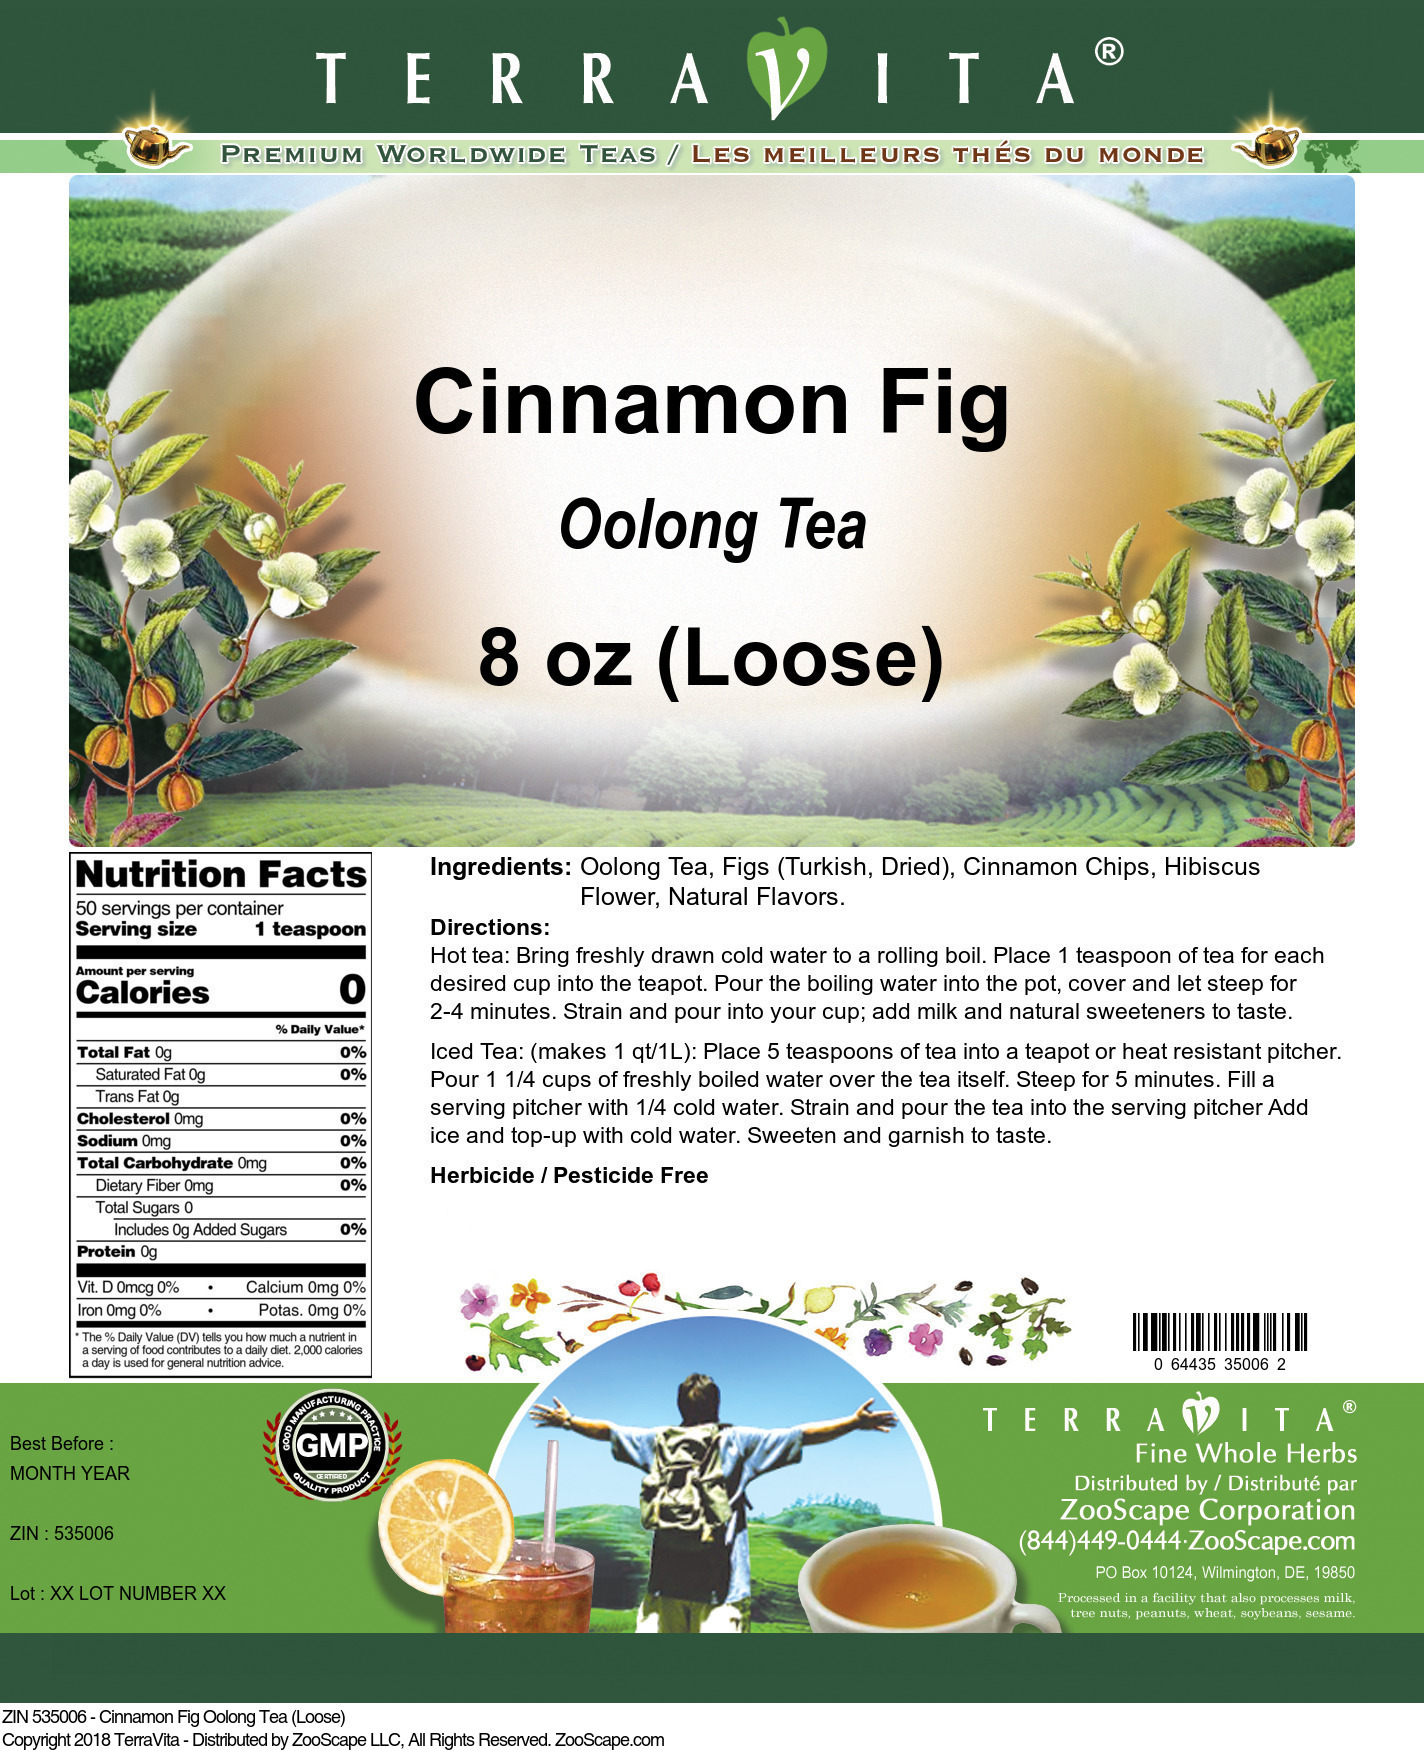 Cinnamon Fig Oolong Tea (Loose) - Label